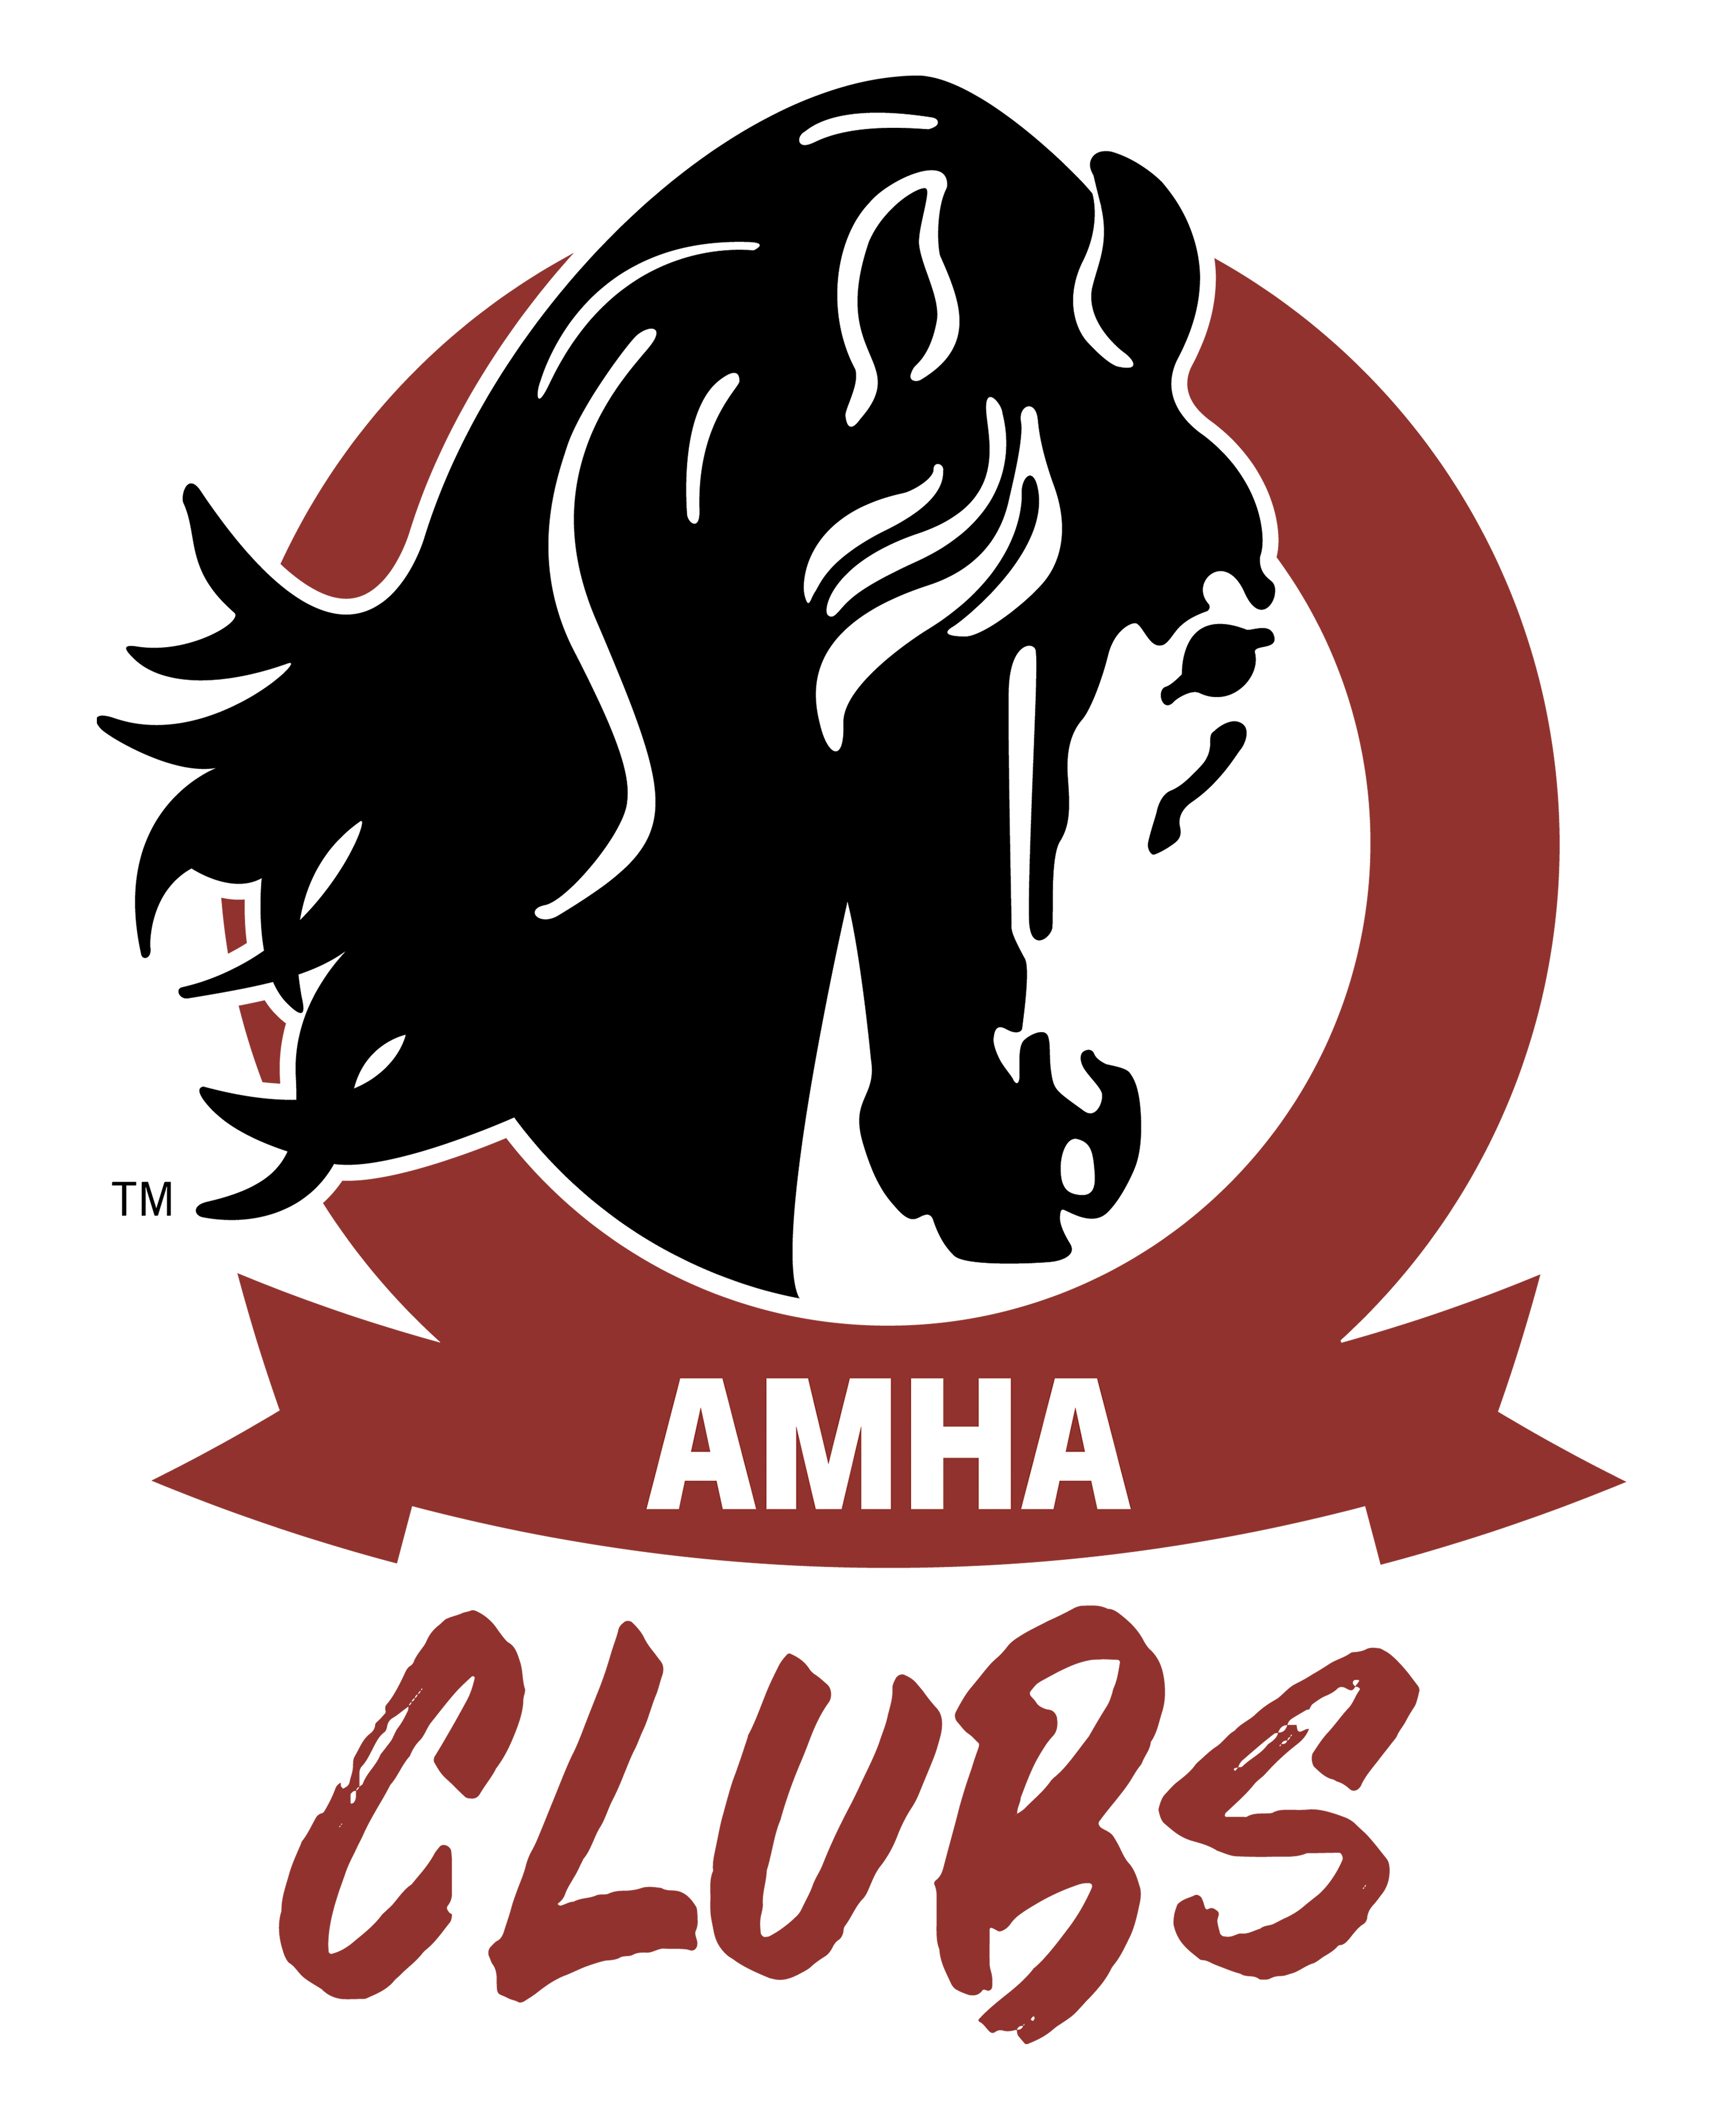 news_amha_clubs_logo_2021.jpg